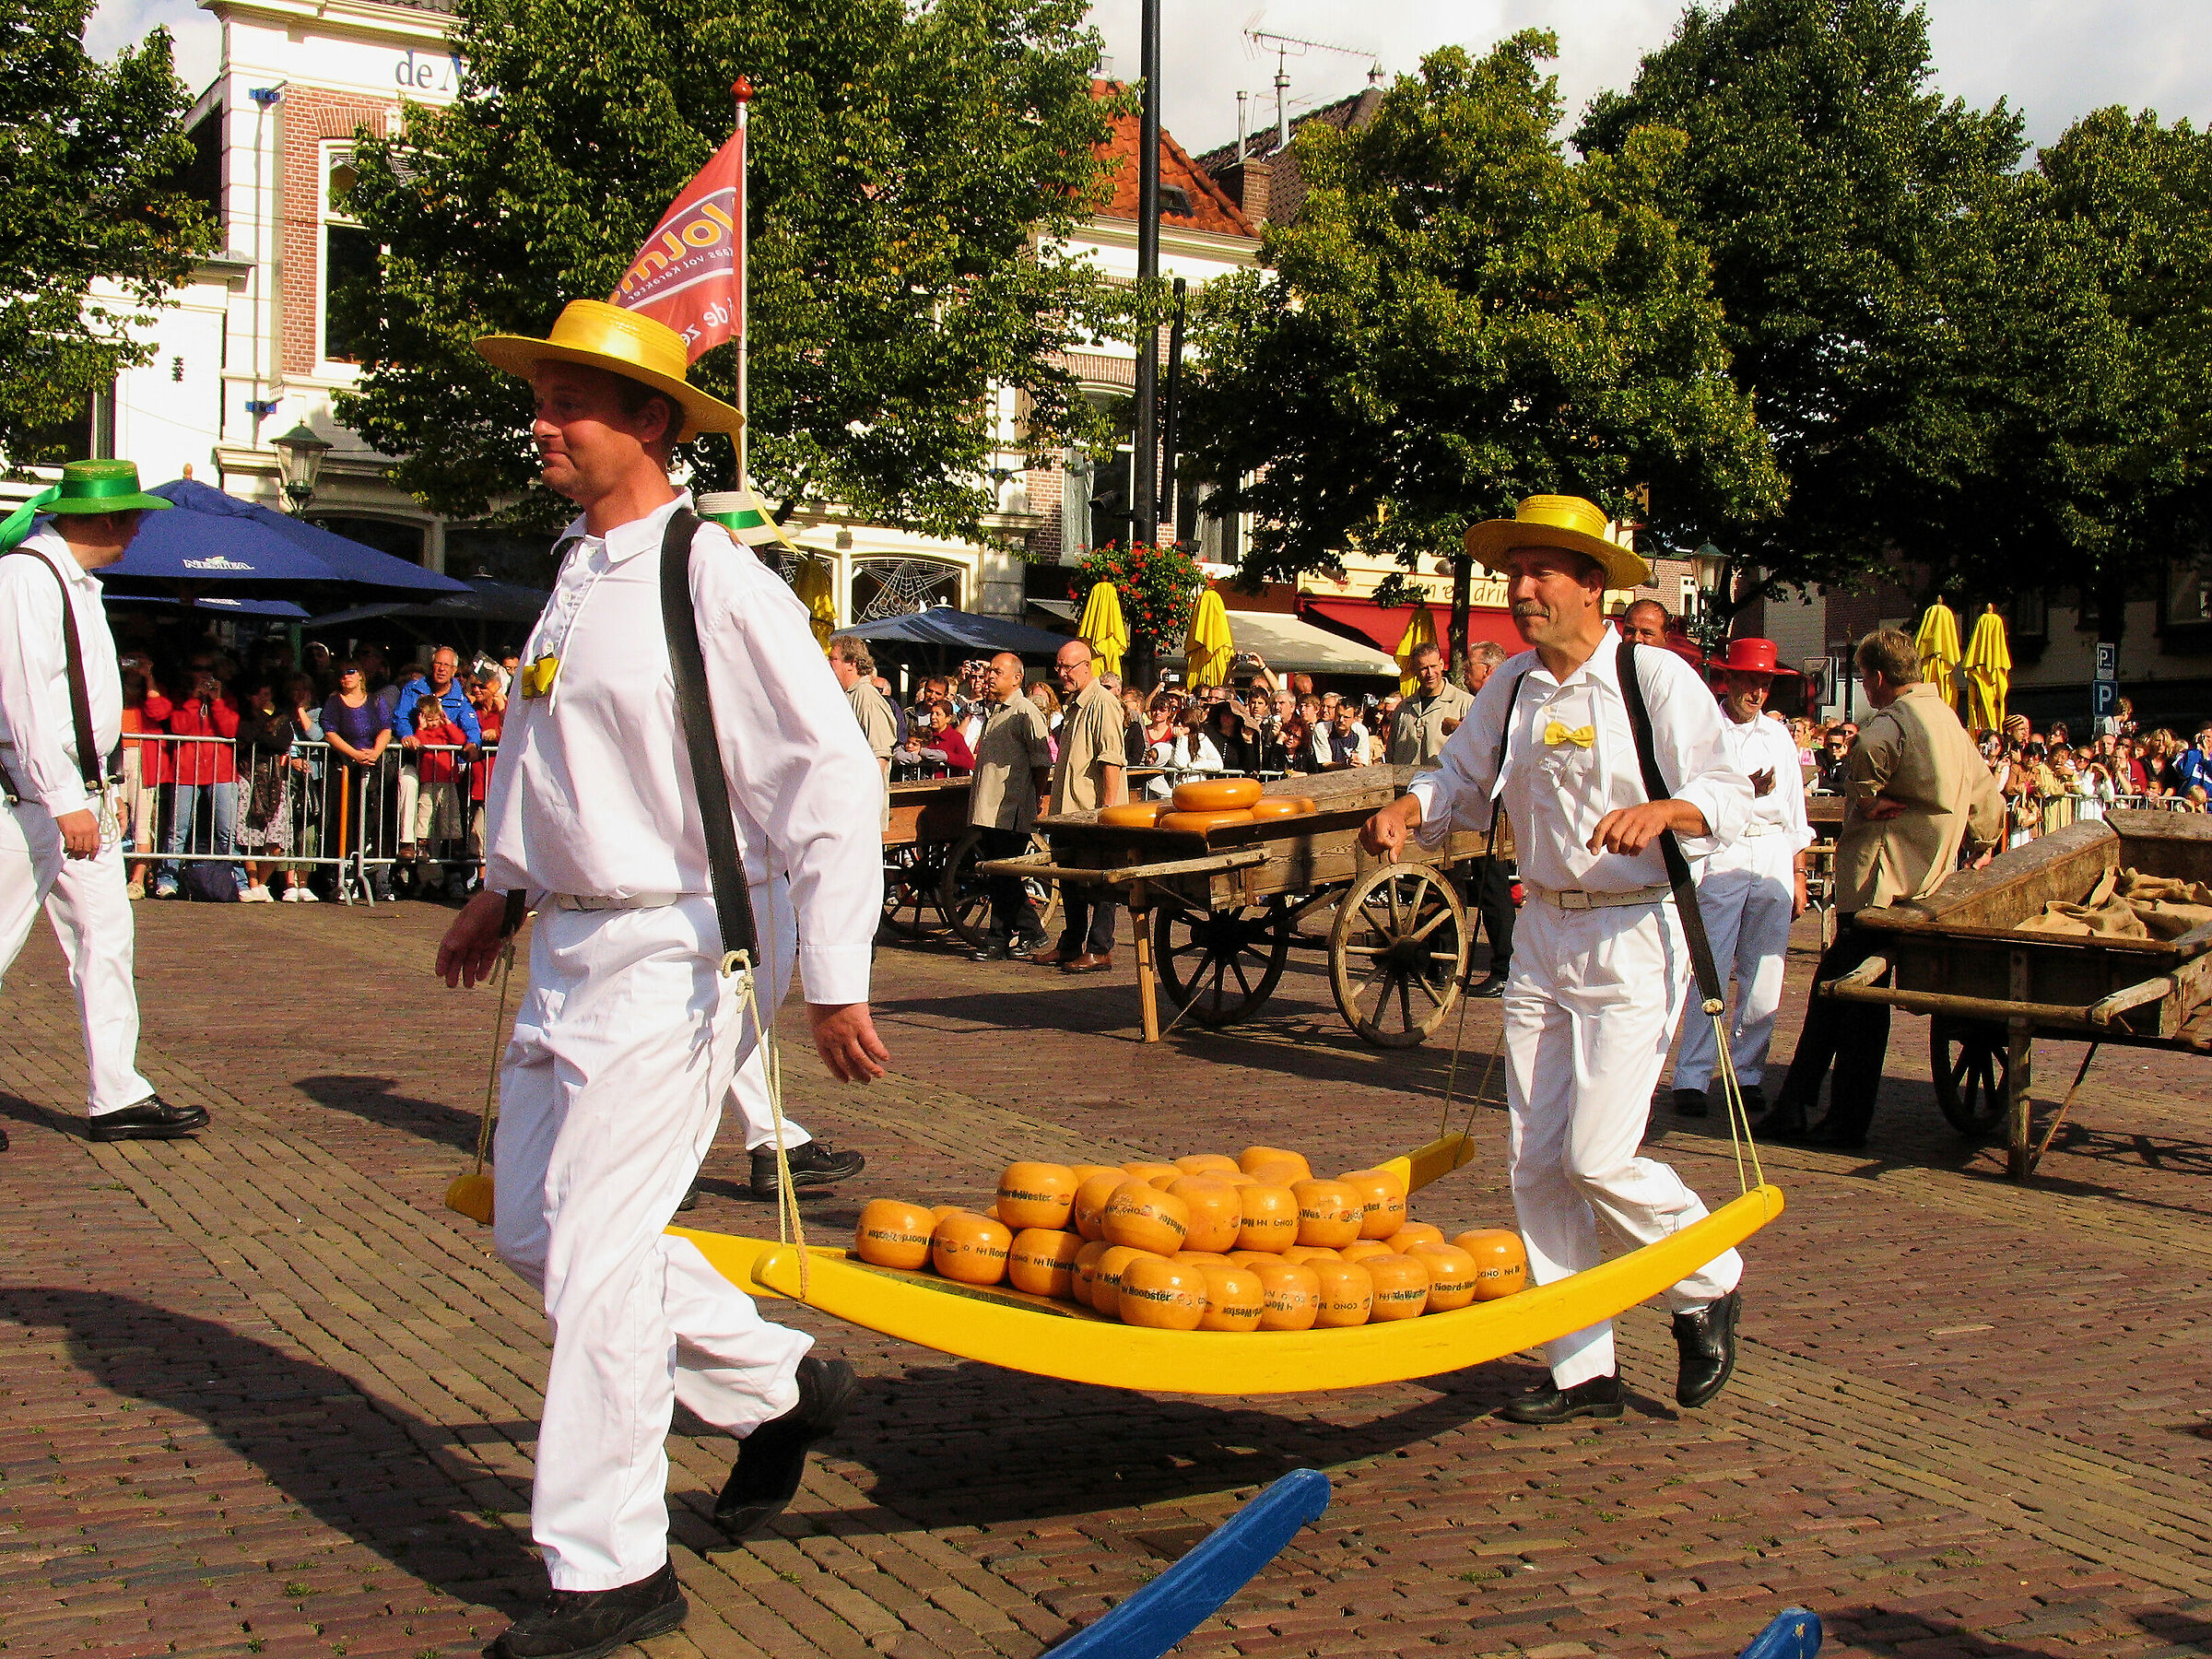 Netherlands: Alkmaar cheese market...